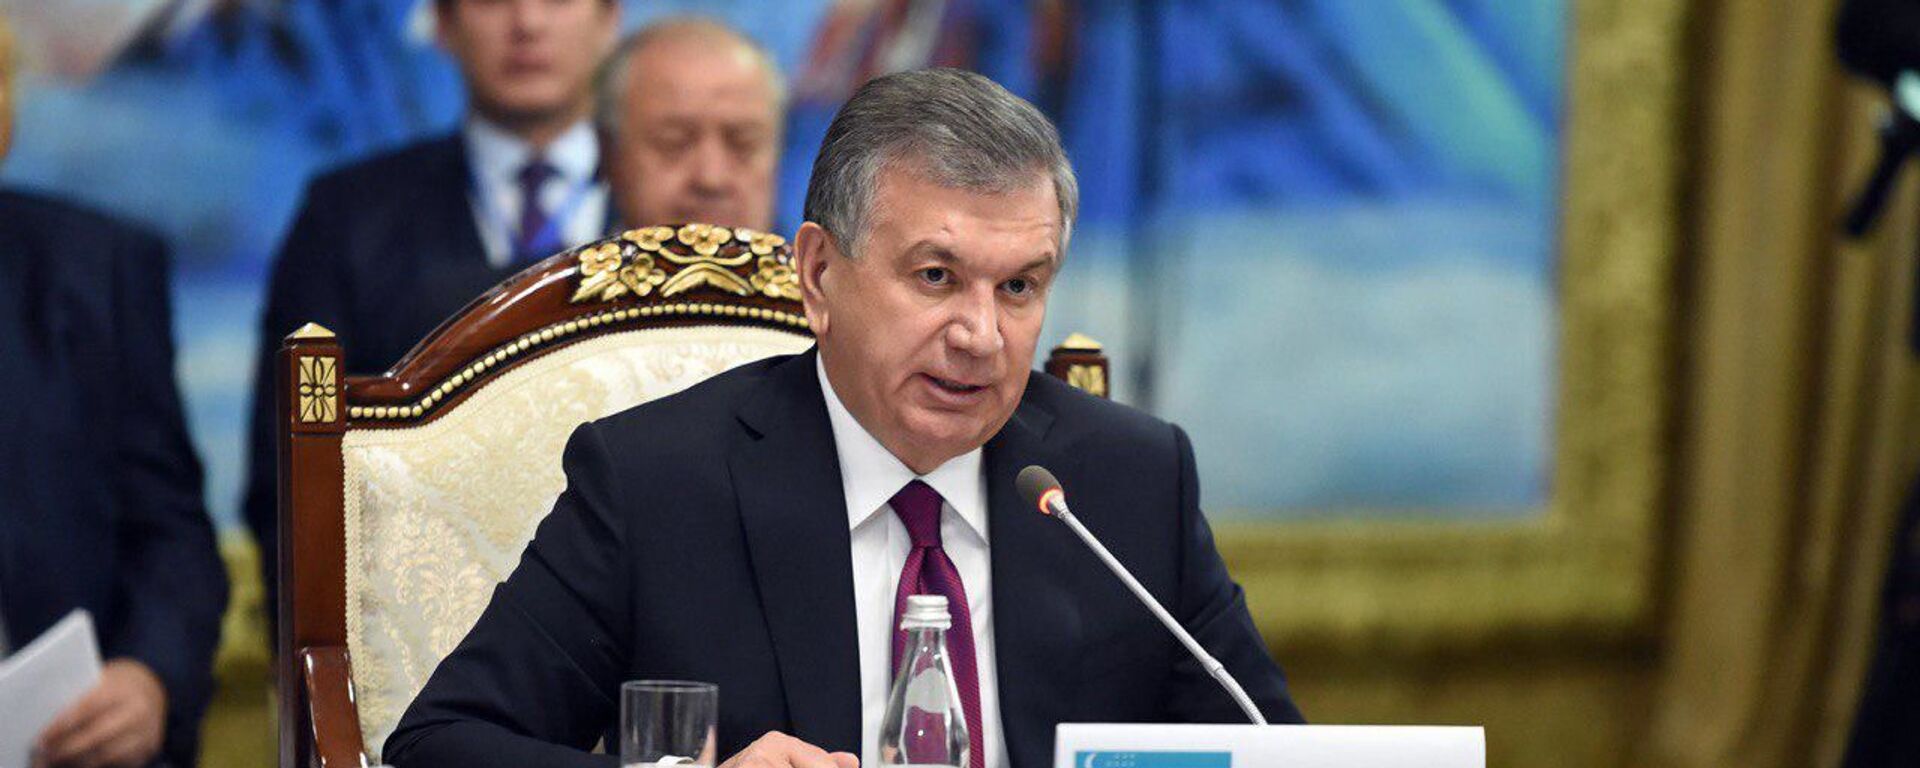 Шавкат Мирзиёев выступил на саммите в Иссык-Куле - Sputnik Узбекистан, 1920, 03.09.2018